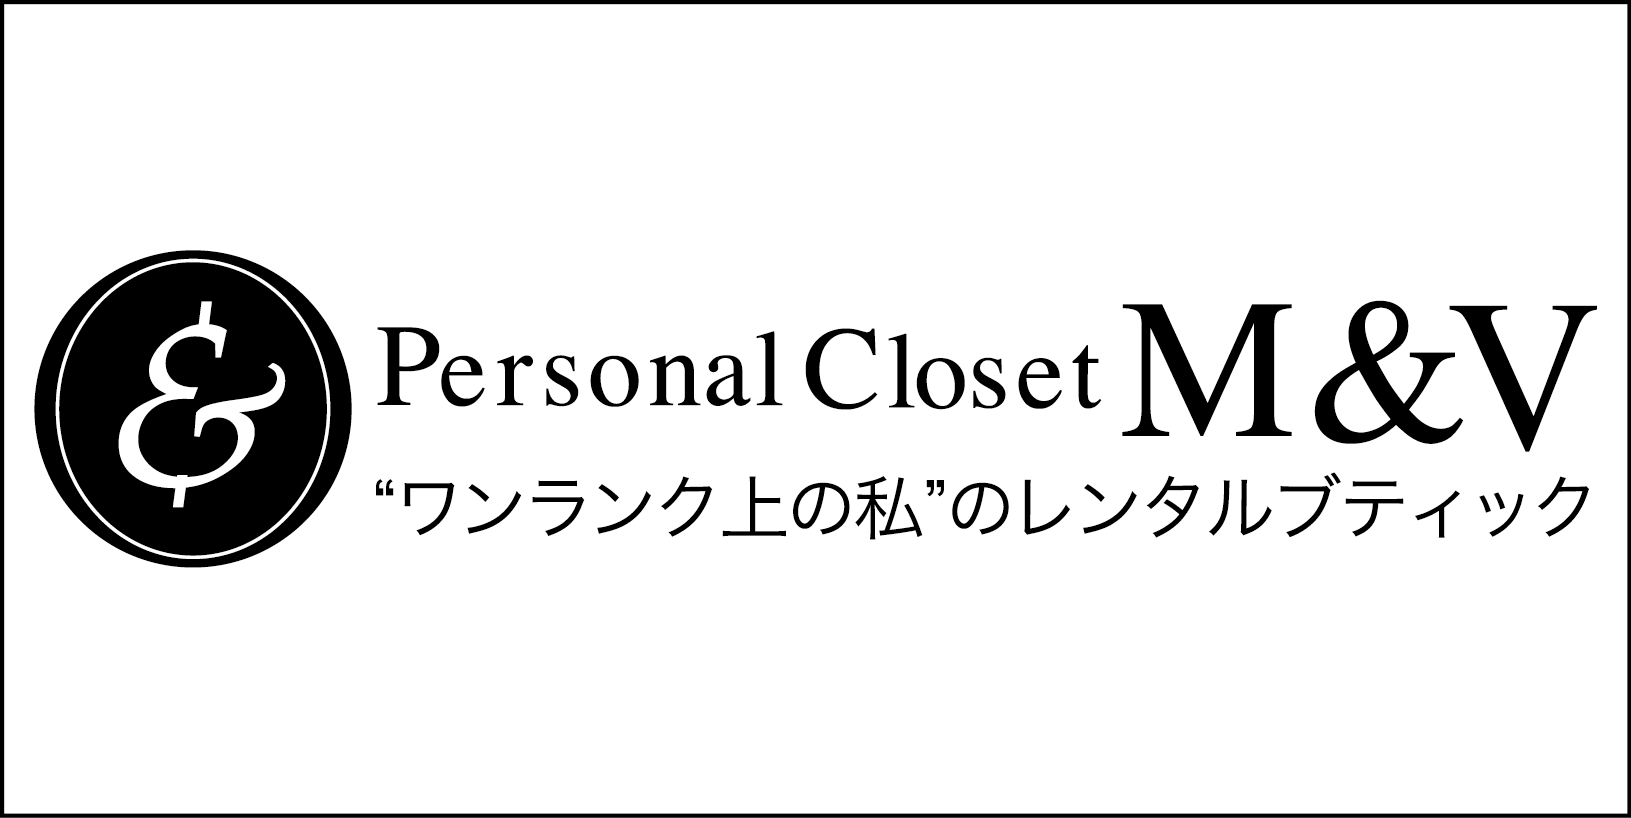 東京23区でレンタルドレスなら【M&V】
|
30代からのワンランク上のドレスレンタルサイト